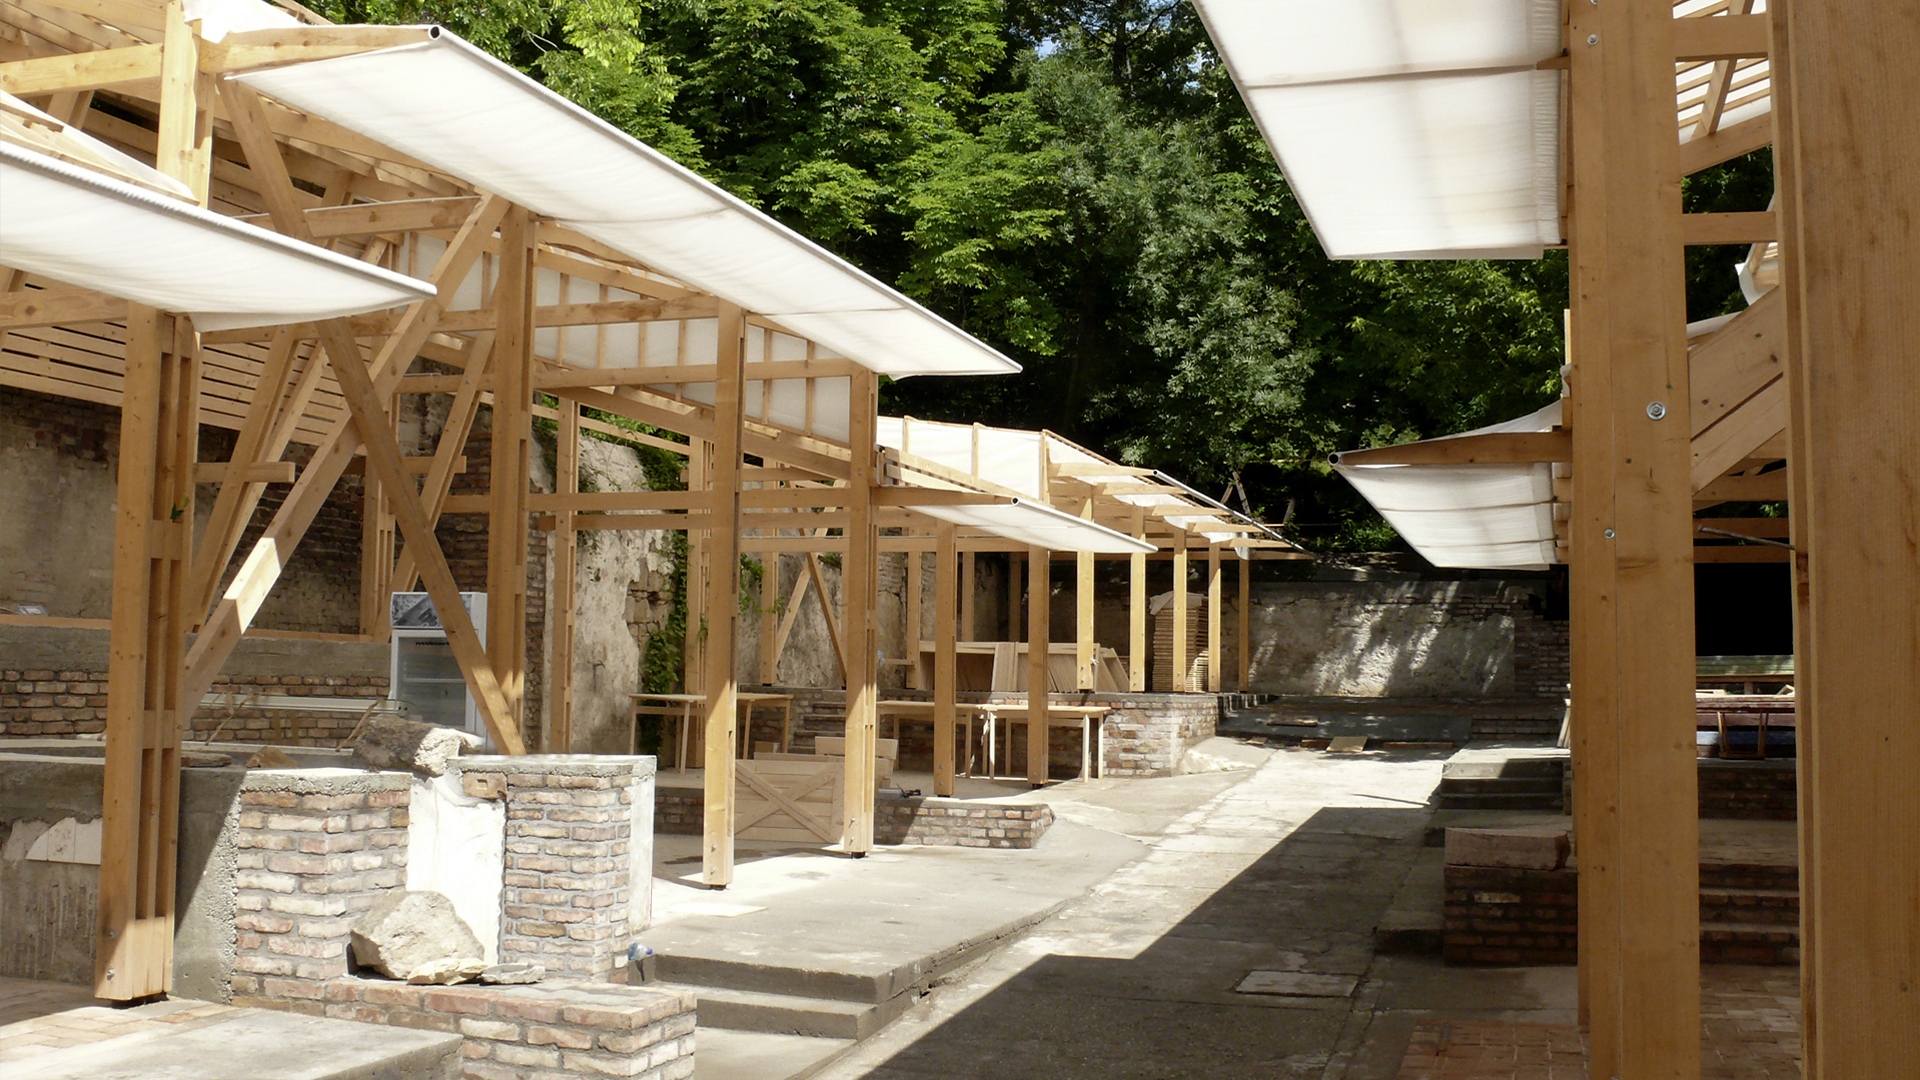 Megépült faépítészeti munkák, Margit9 közösségi tér, 2012-13